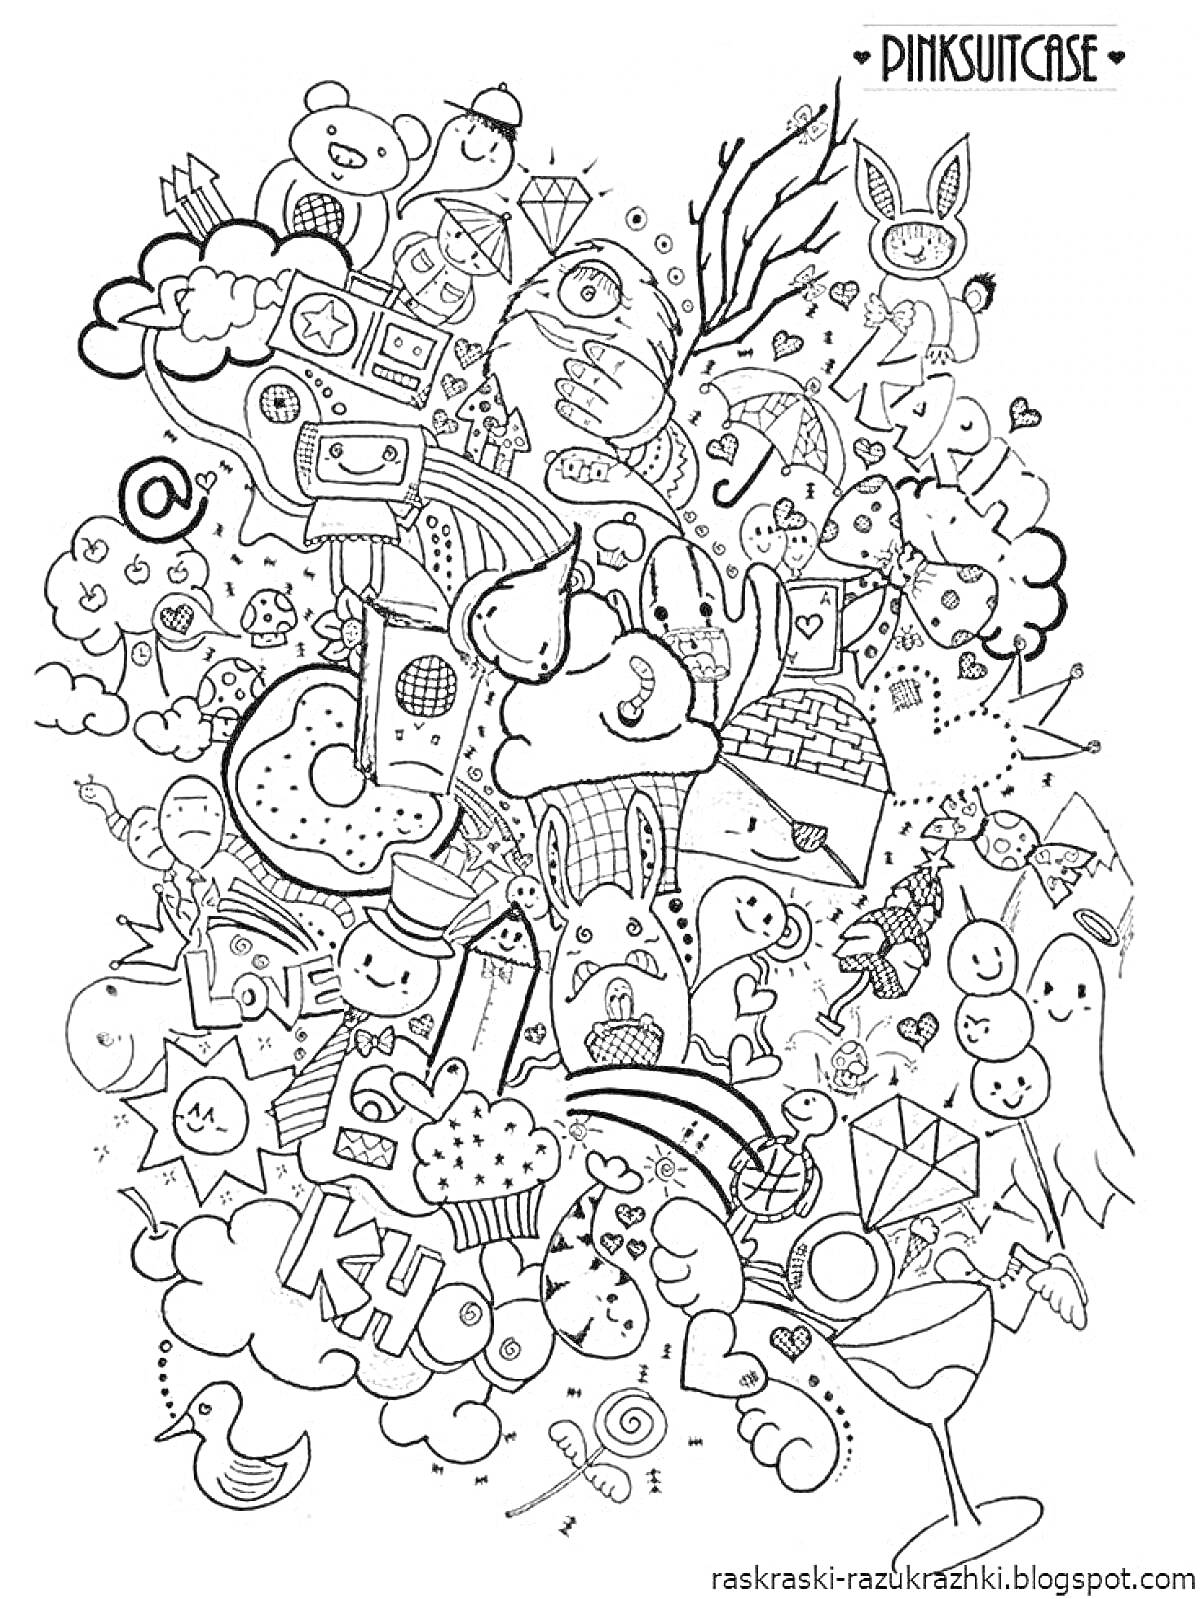 РаскраскаКоллаж с различными элементами: медведи, сладости, кресты, мышка, улитка, здания, бриллианты, сердечки, зонтики, привидения.